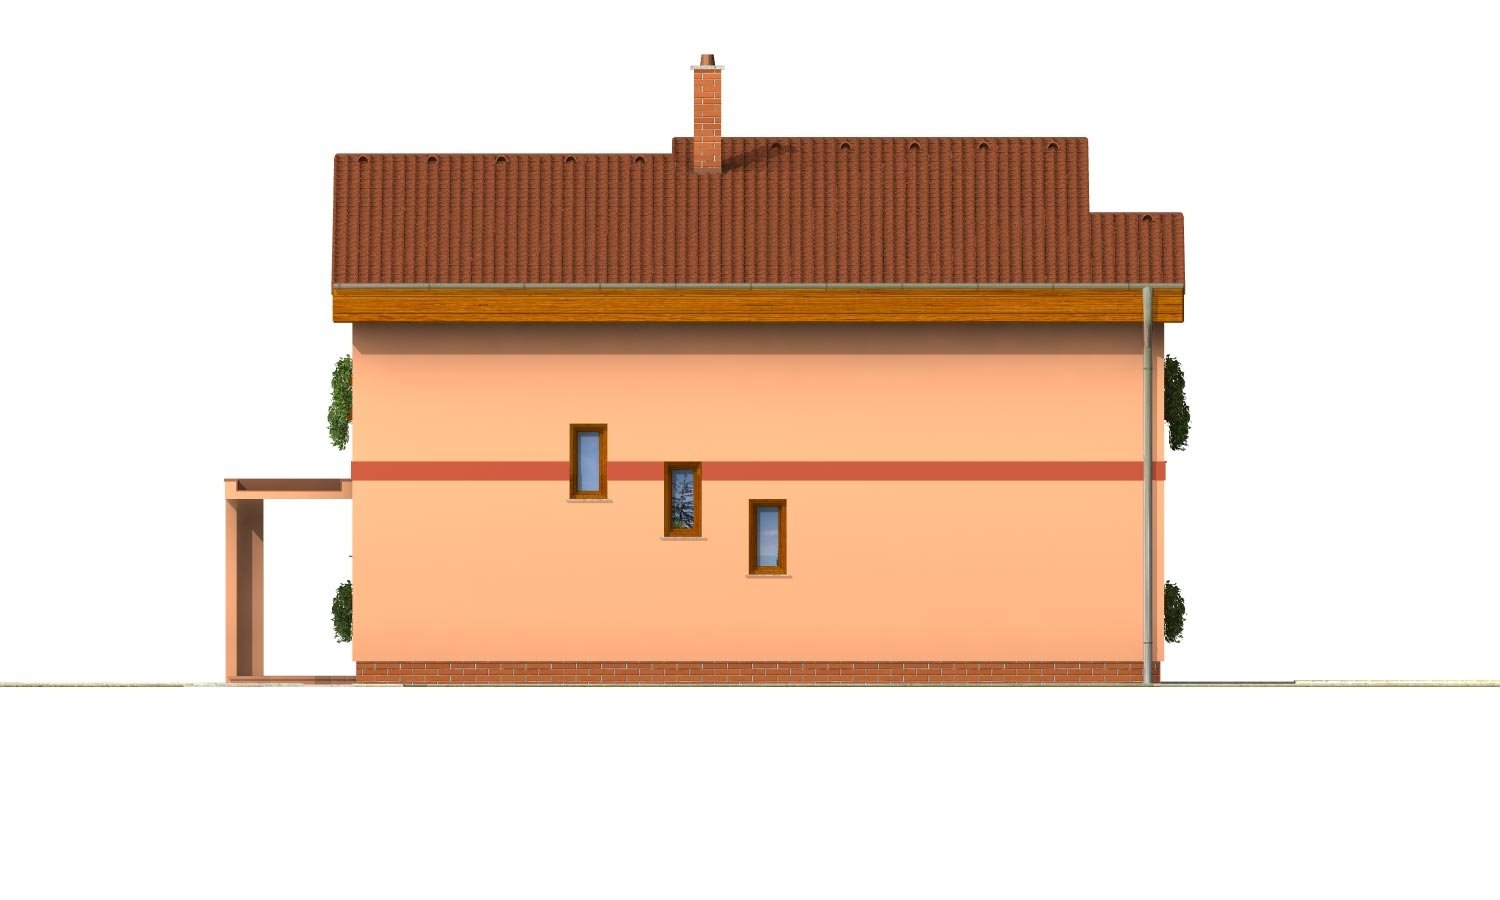 Pohľad 3. - Moderní poschoďový dům s pultovými střechami a pokojem v přízemí.